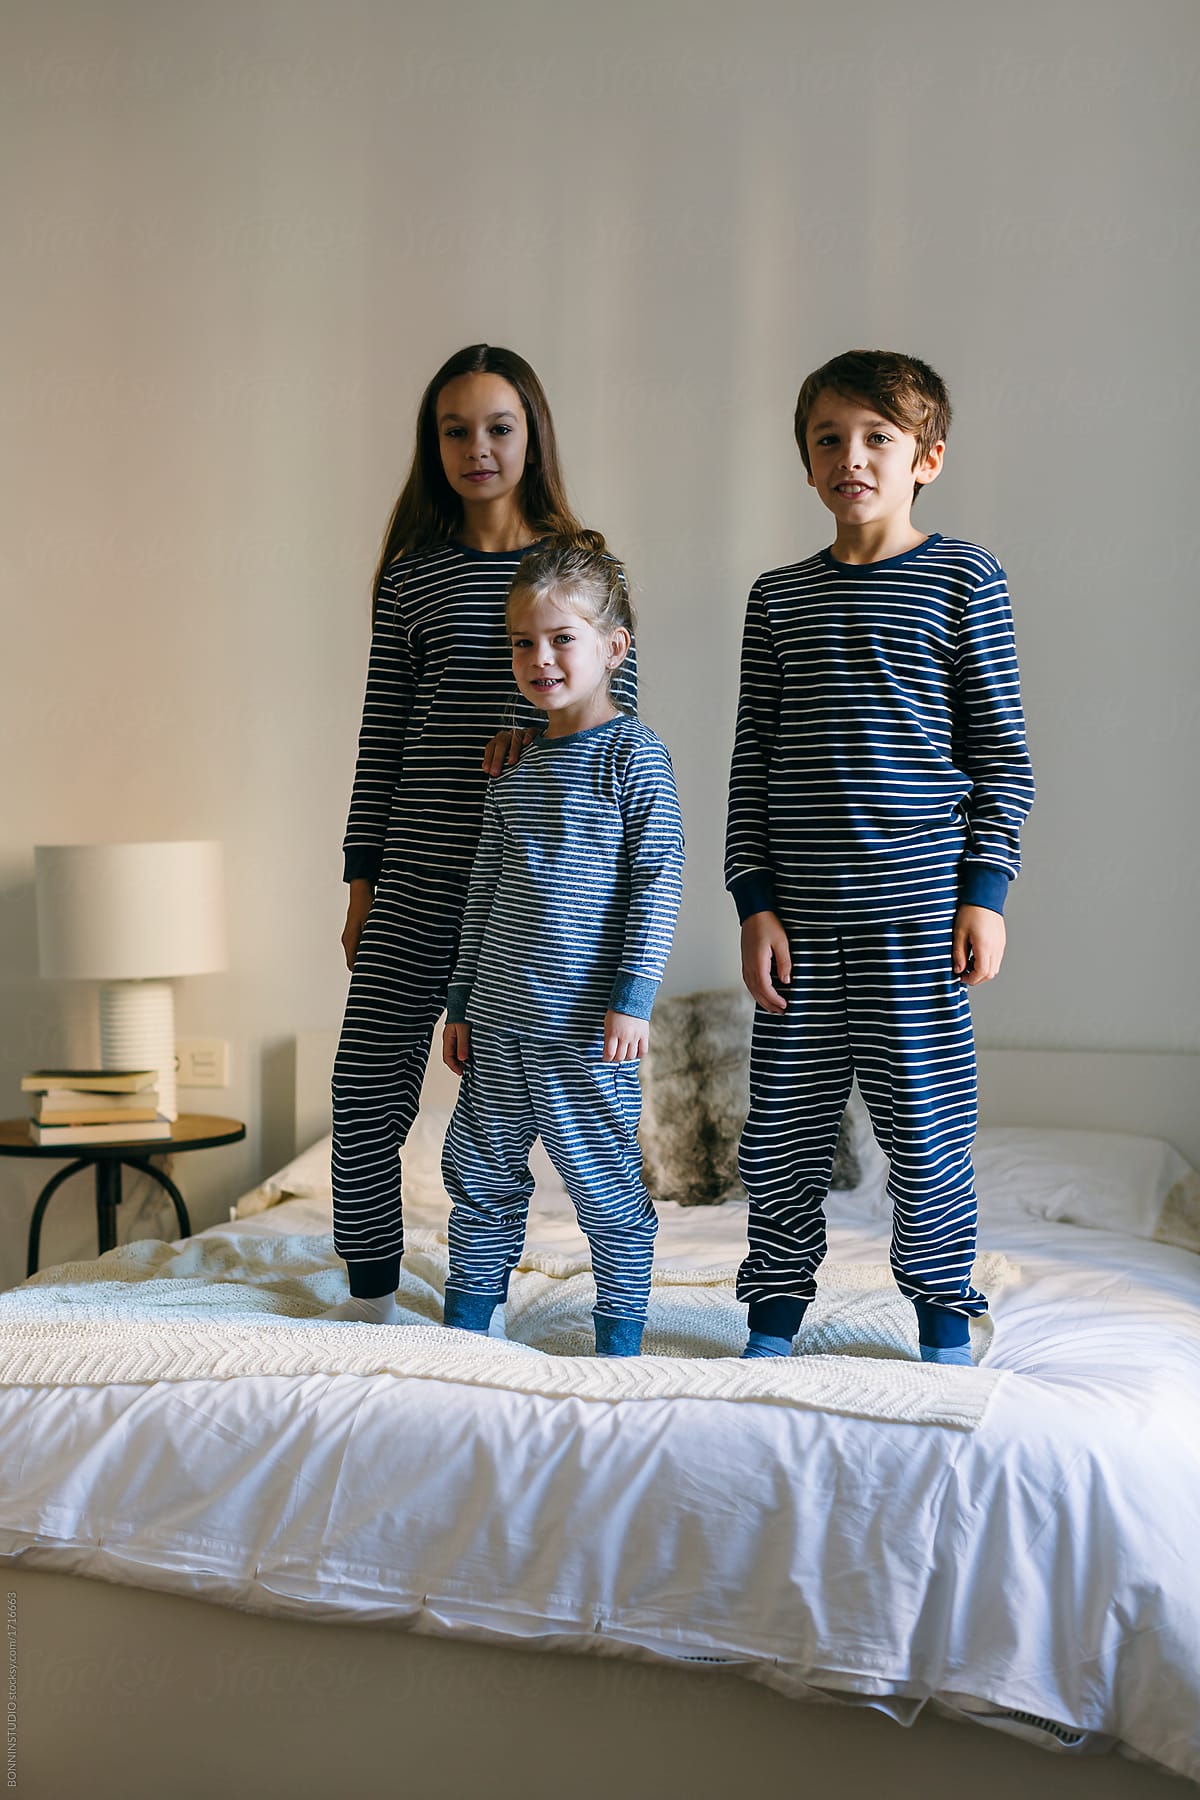 kids wearing pajamas